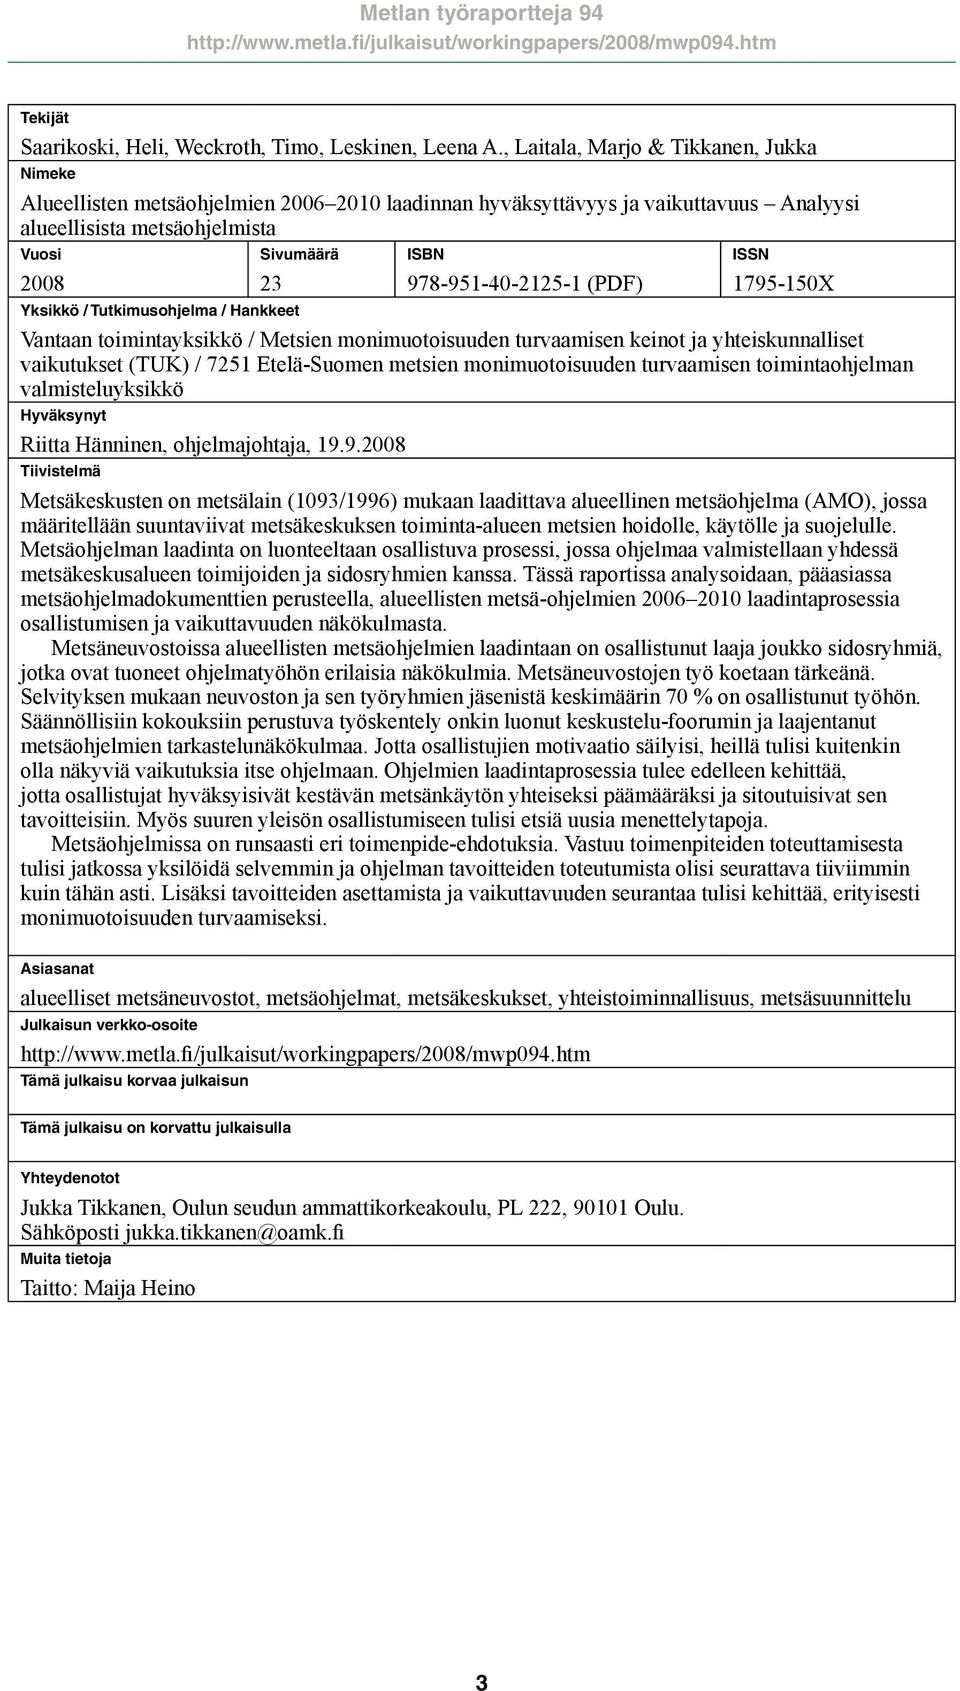 Tutkimusohjelma / Hankkeet ISBN 978-951-40-2125-1 (PDF) ISSN 1795-150X Vantaan toimintayksikkö / Metsien monimuotoisuuden turvaamisen keinot ja yhteiskunnalliset vaikutukset (TUK) / 7251 Etelä-Suomen